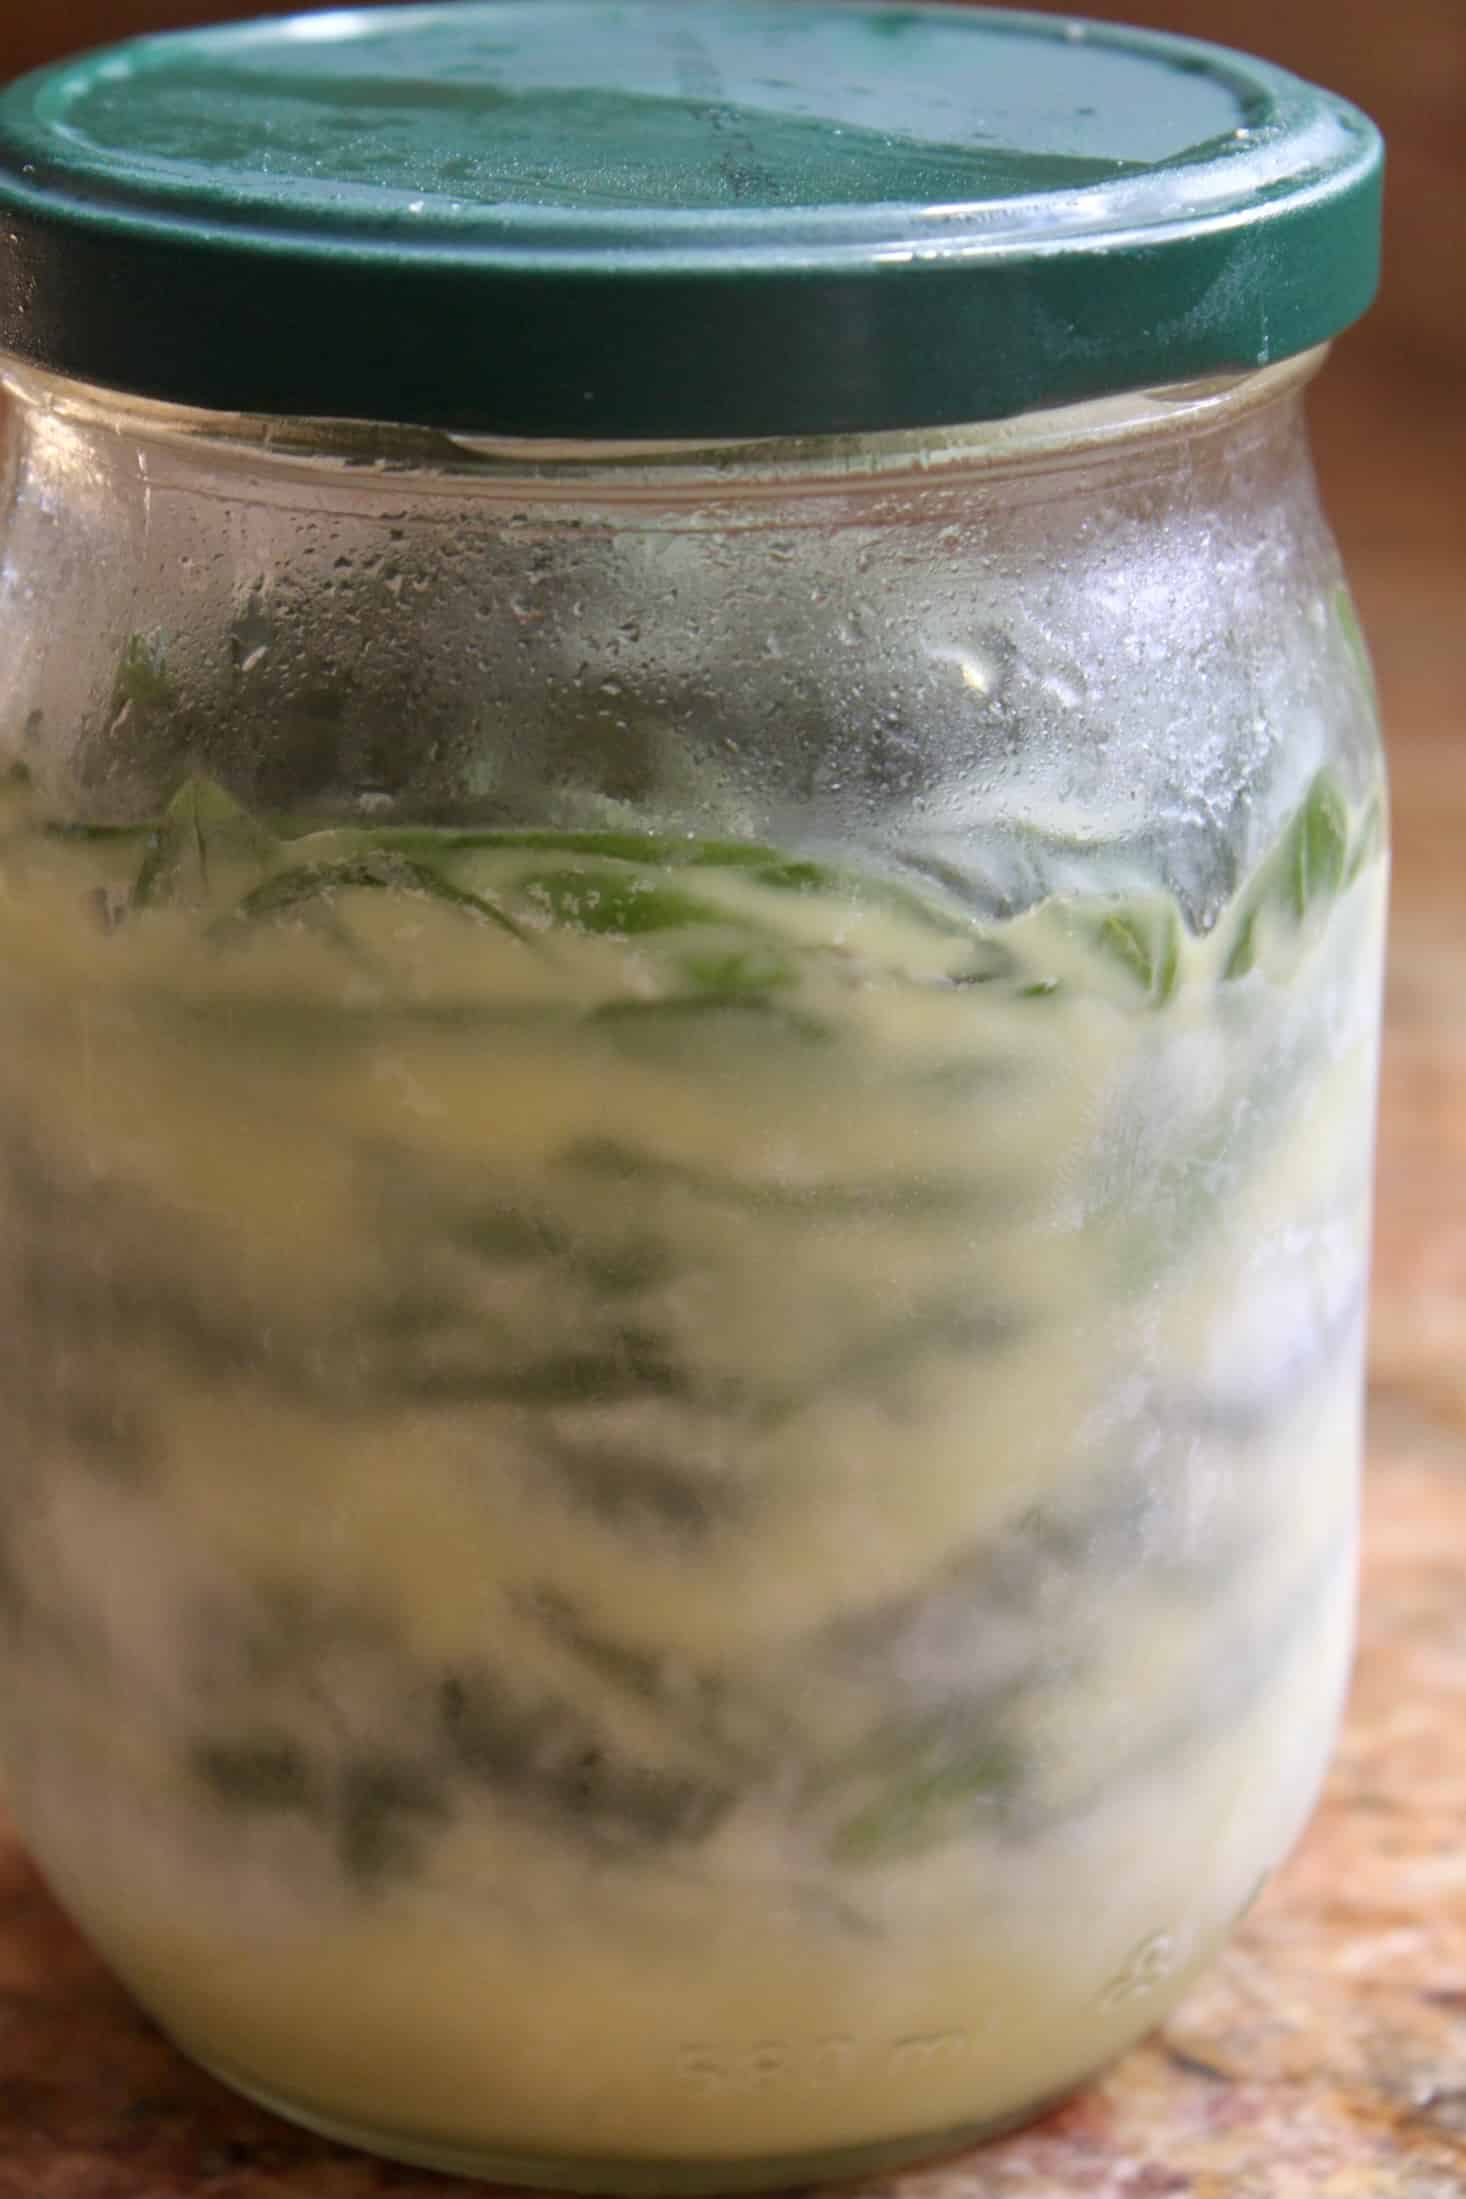 frozen basil under oil in a jar